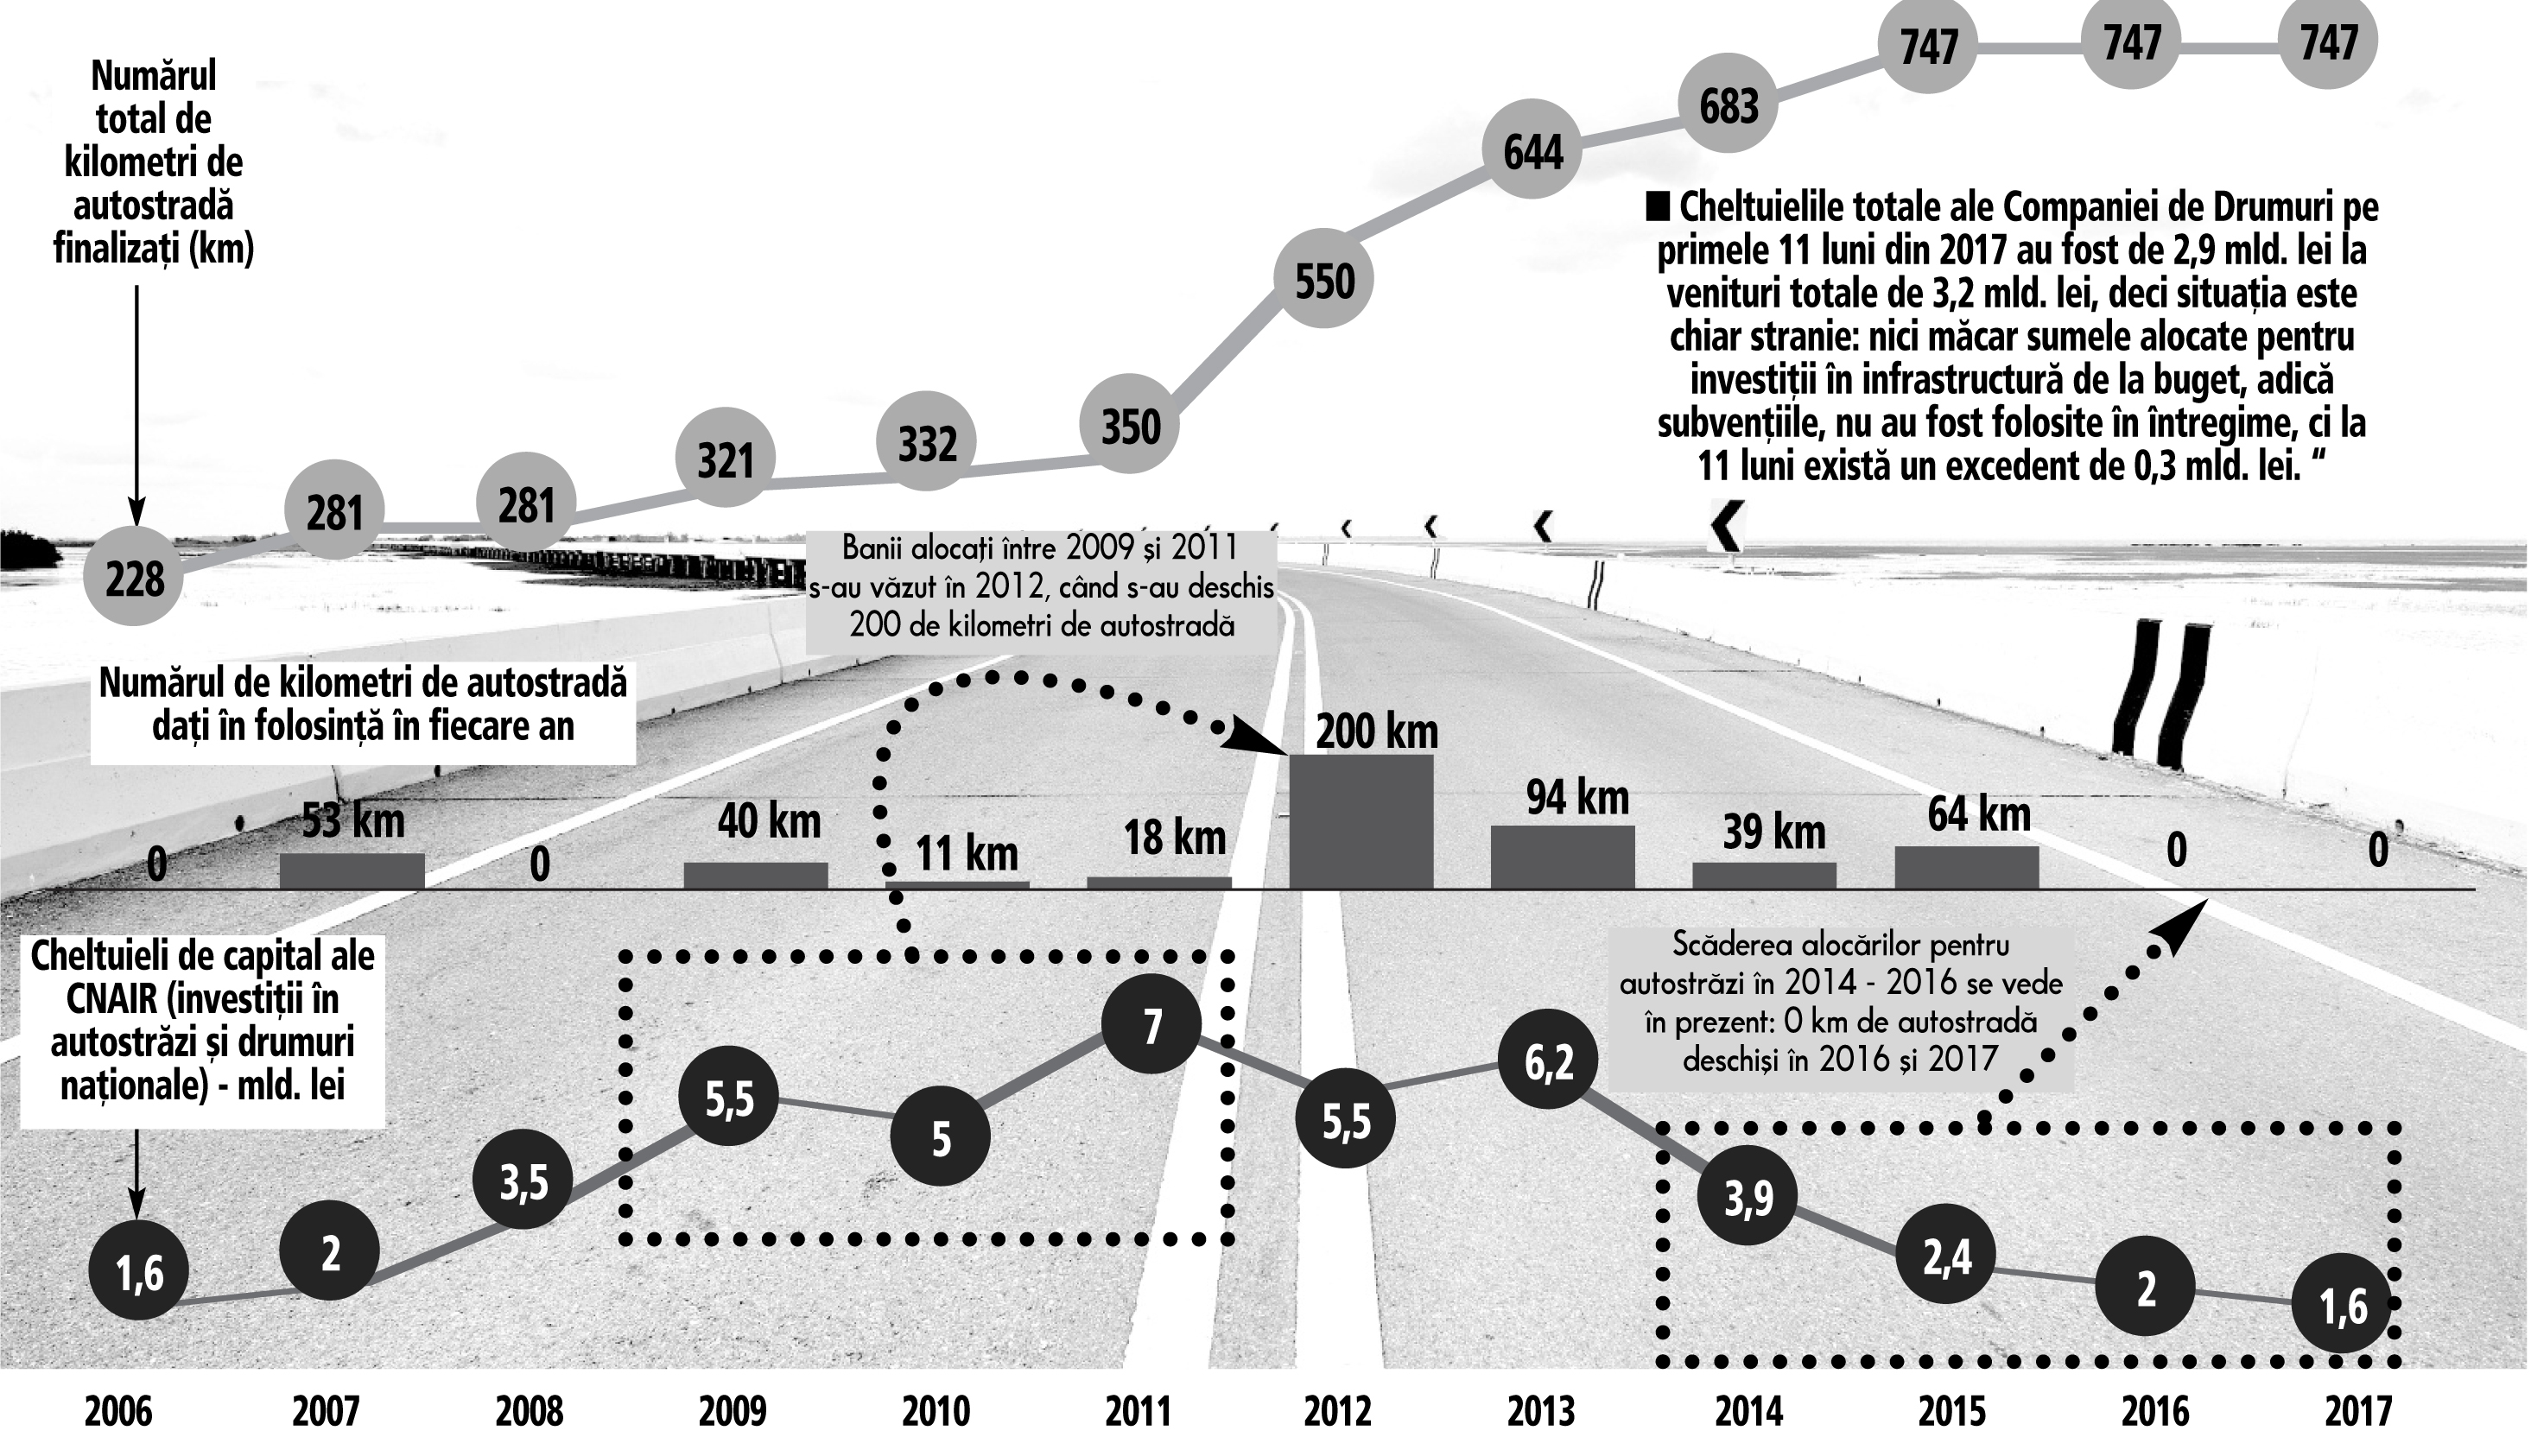 Execuţia bugetară confirmă ce vedem toţi: guvernul Grindeanu -Tudose – Dragnea a fost cel mai prost din ultimul deceniu pentru infrastructura rutieră. Banii alocaţi pentru autostrăzi şi şosele naţionale au fost de trei ori mai puţini decât în perioada 2009-2013